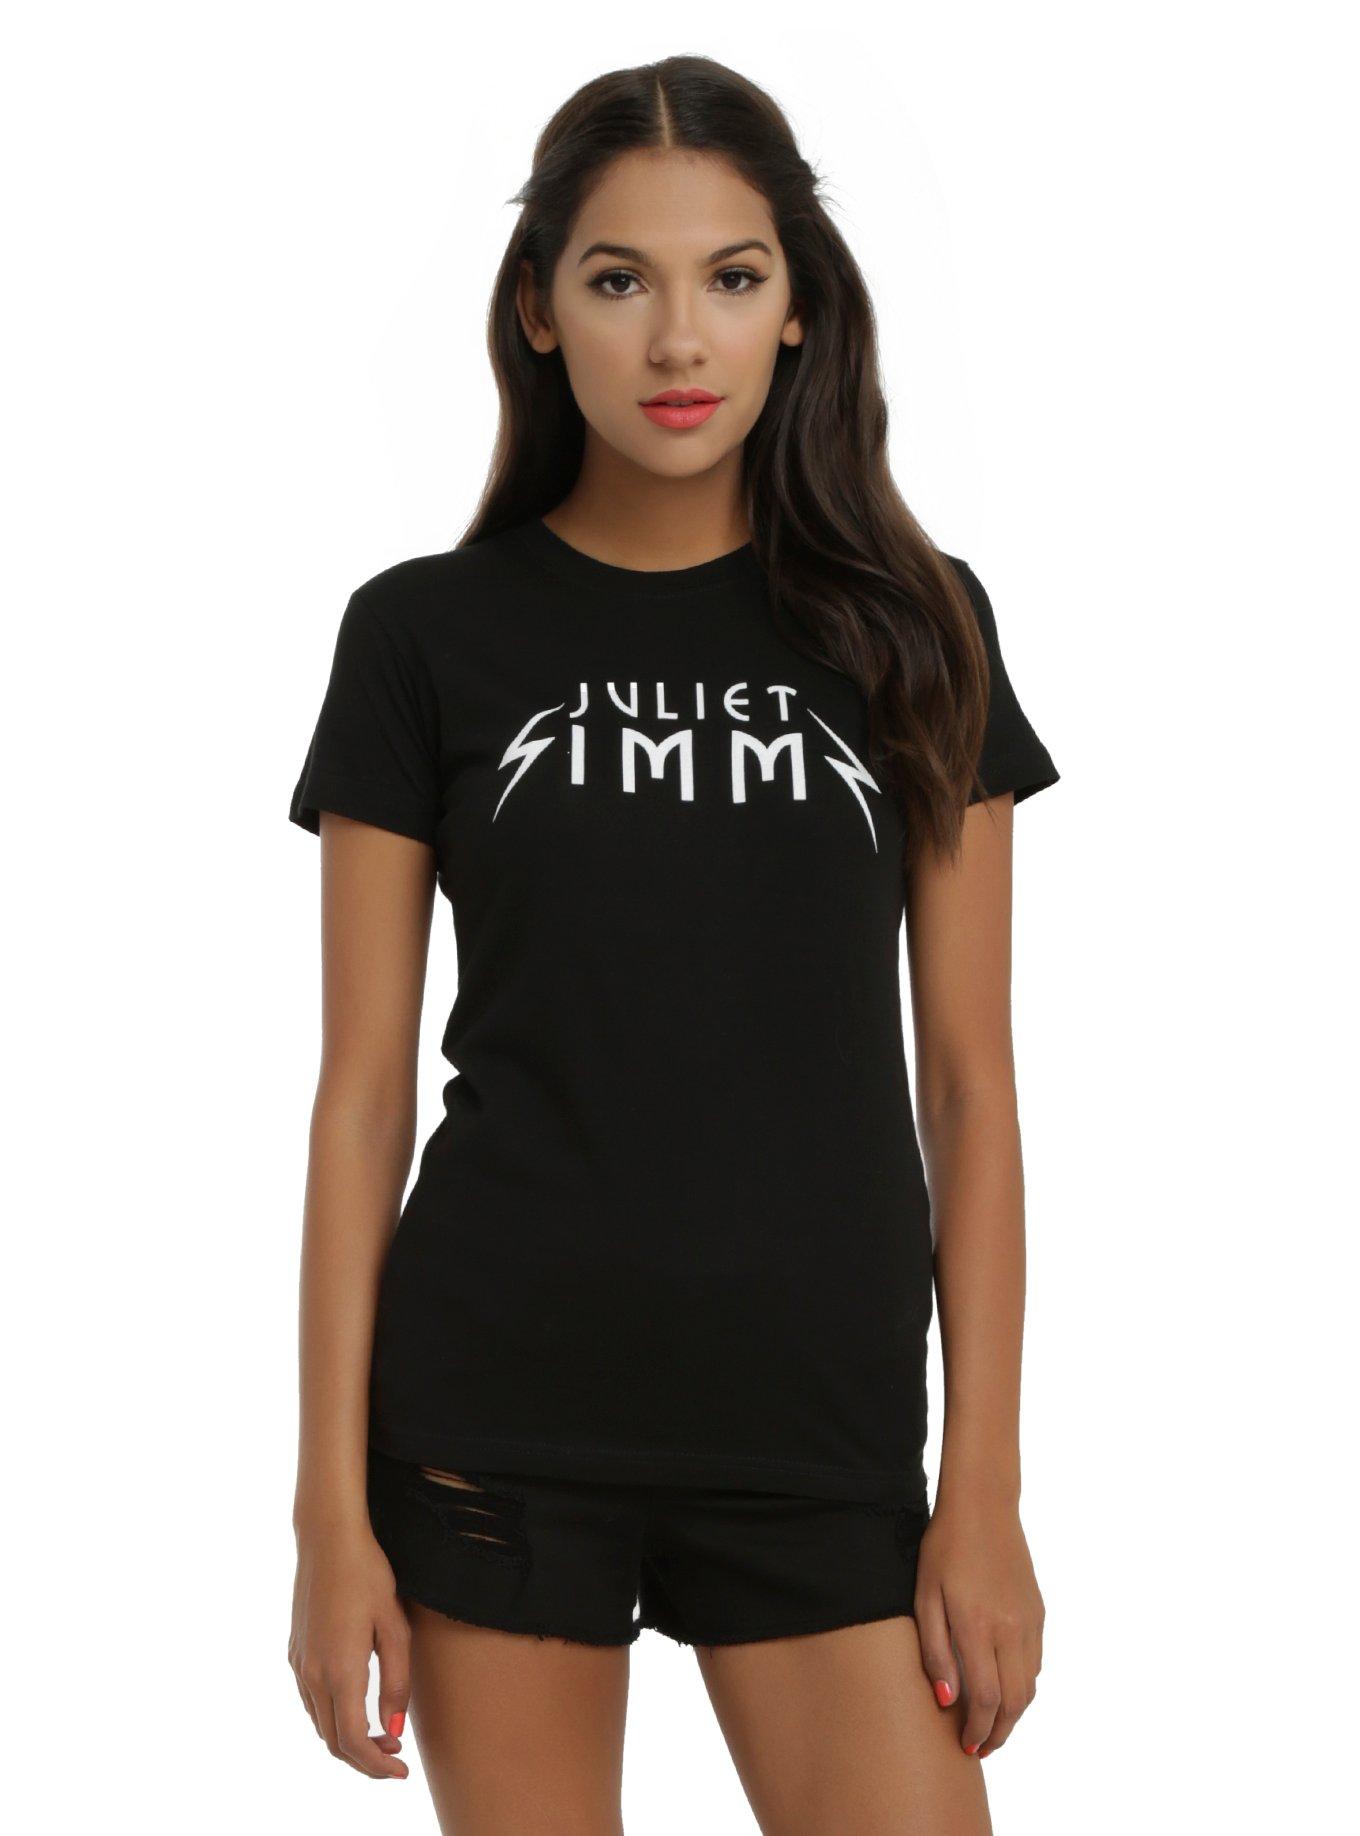 Juliet Simms Logo Girls T-Shirt, BLACK, hi-res